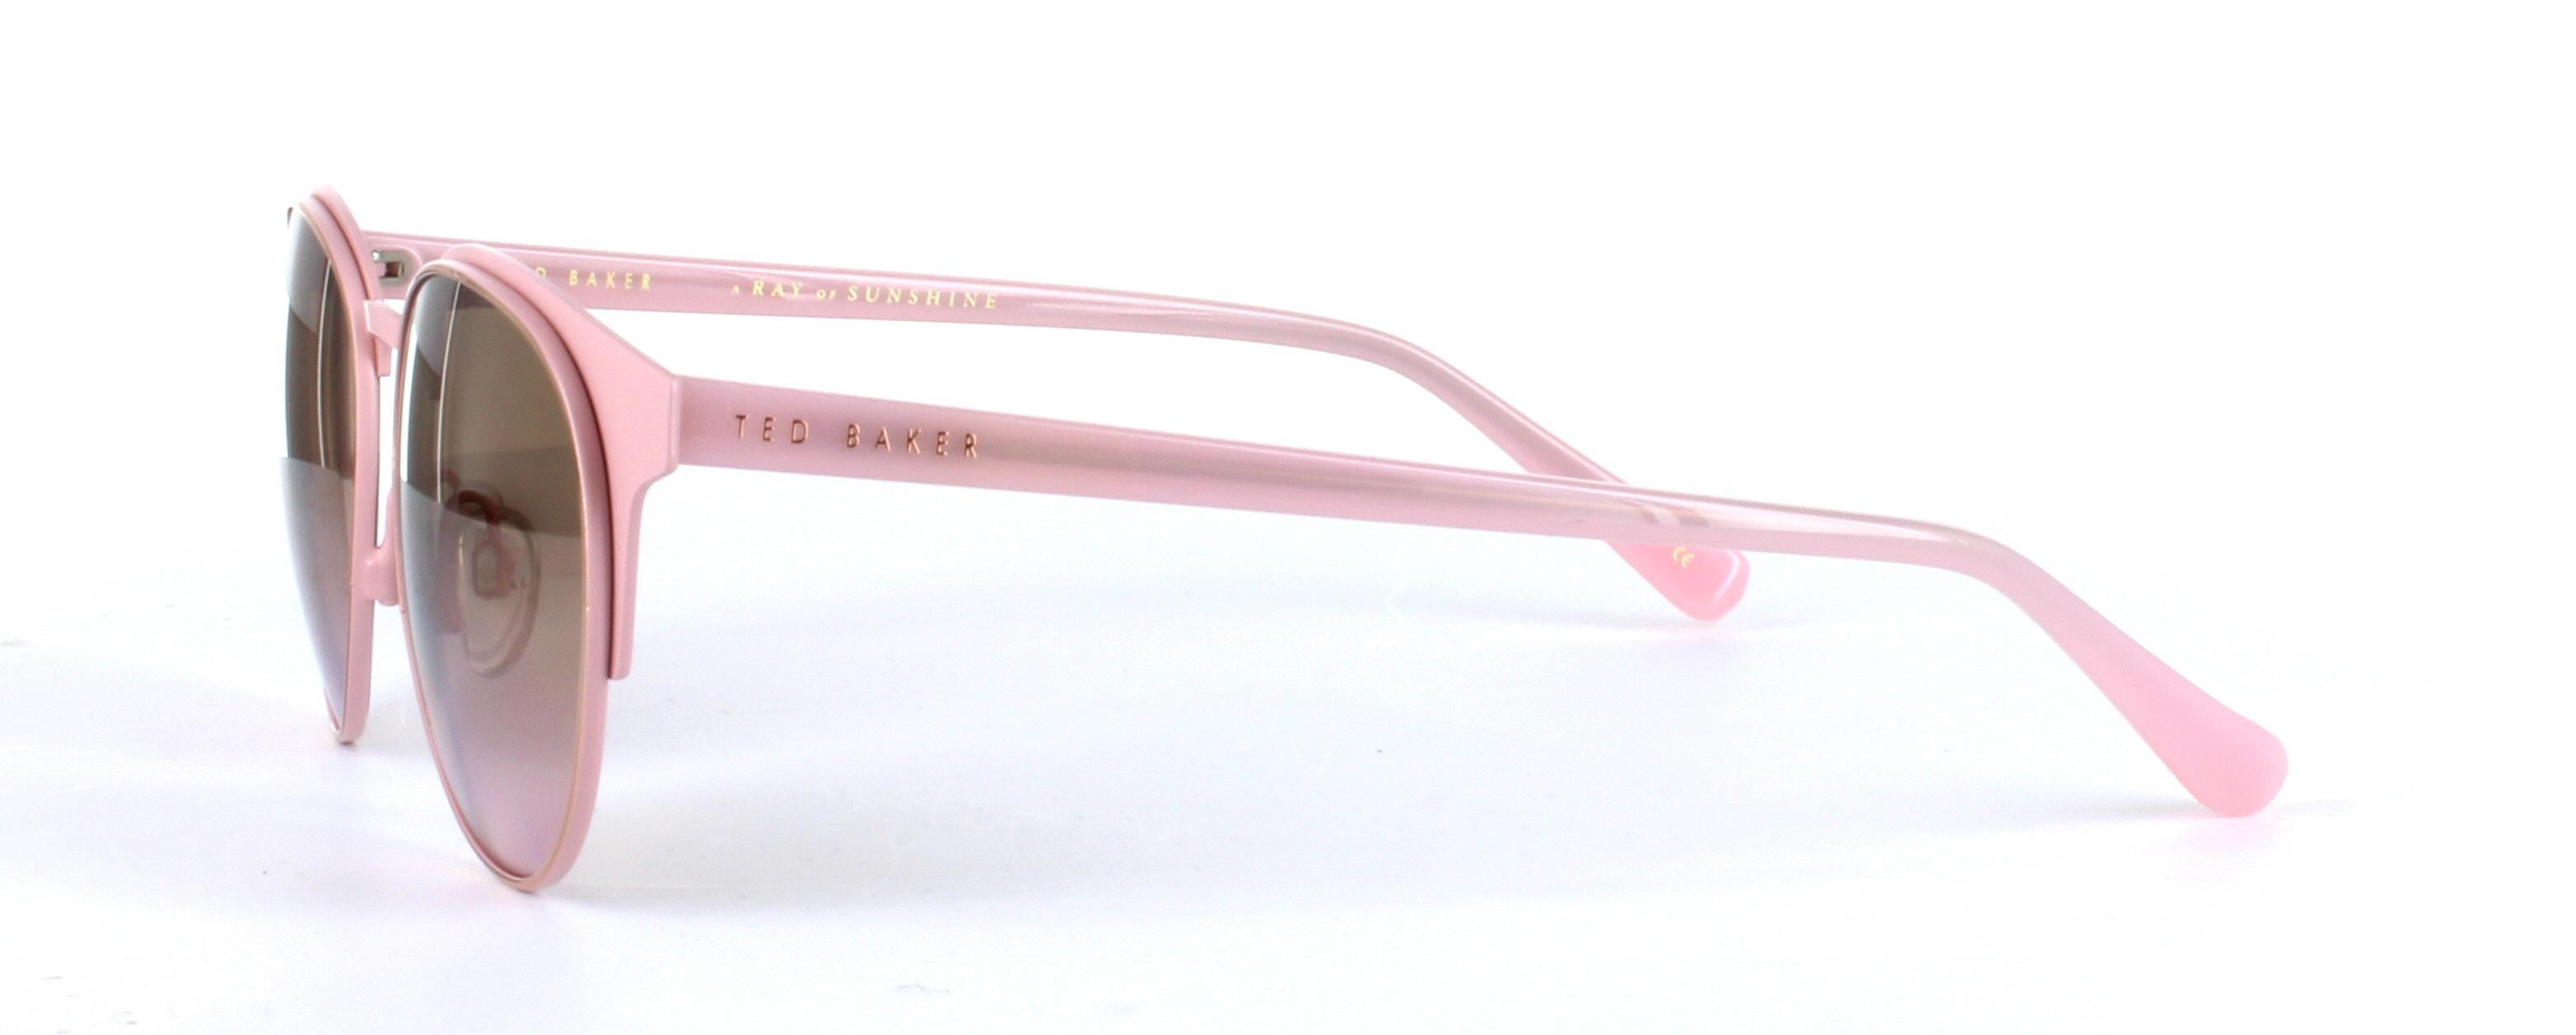 Daila Pink Full Rim Metal Sunglasses - Image View 2